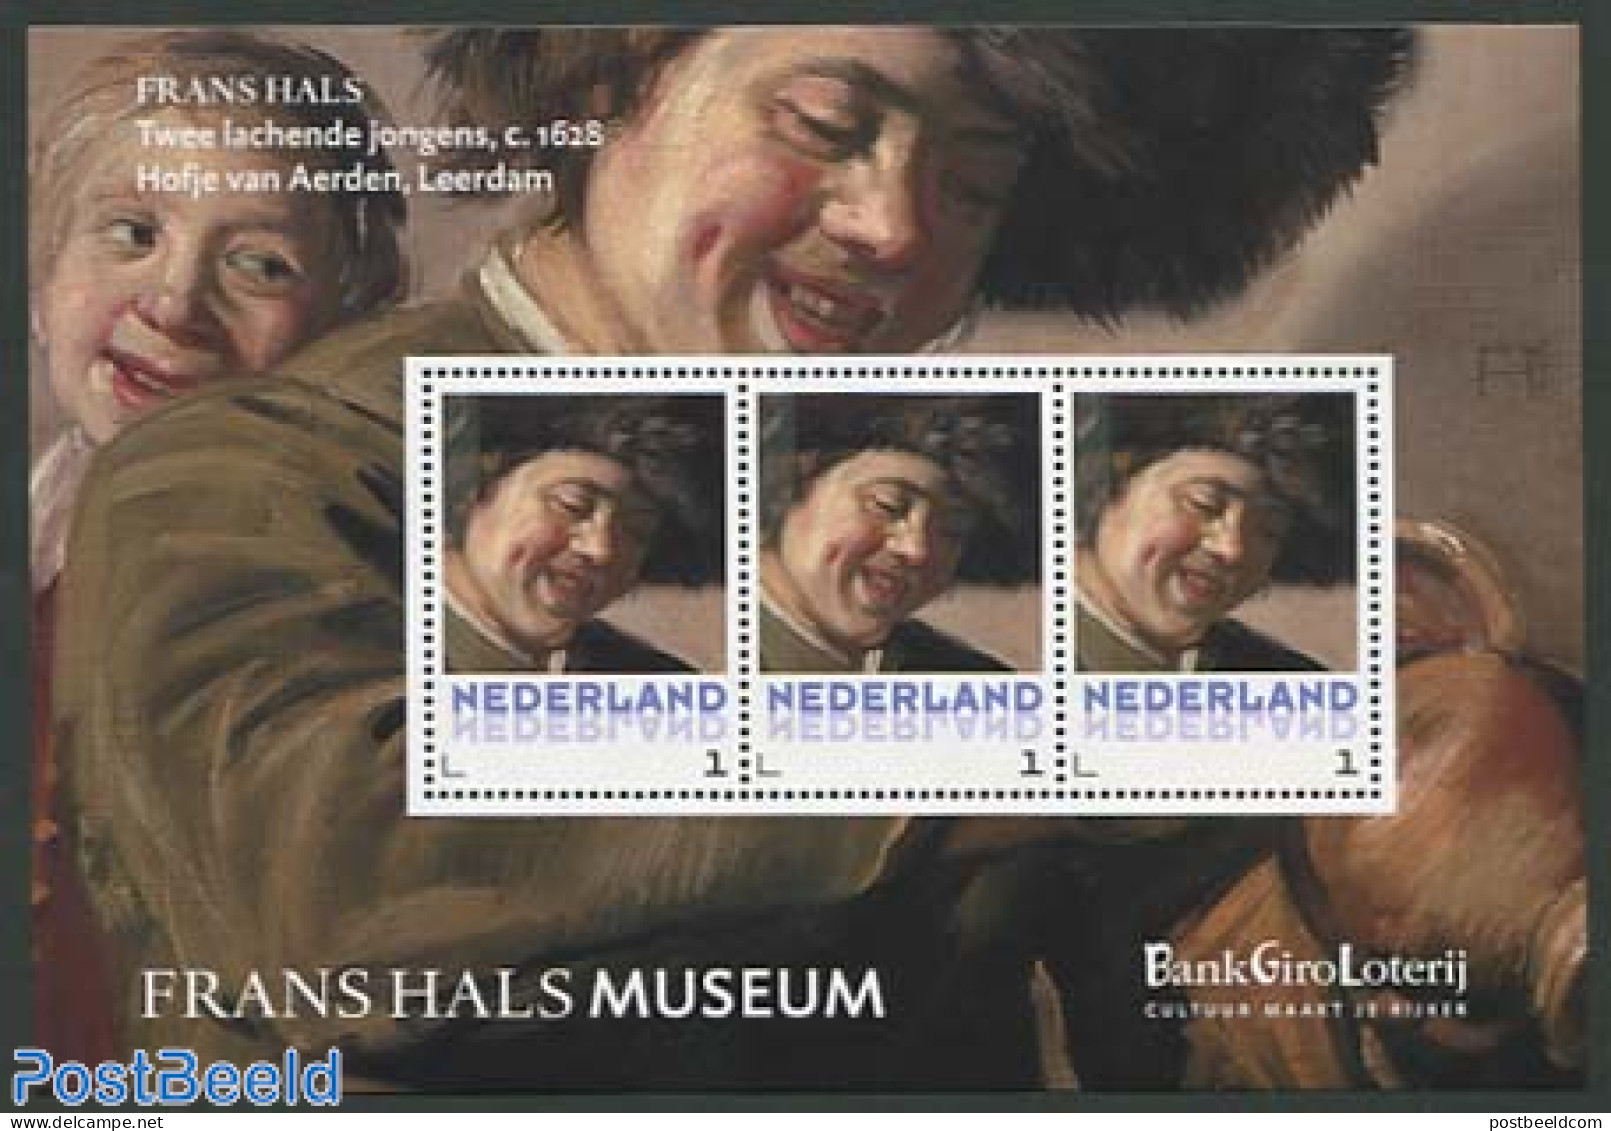 Netherlands - Personal Stamps TNT/PNL 2013 Frans Hals Museum 3v M/s, Mint NH, Art - Museums - Paintings - Musées